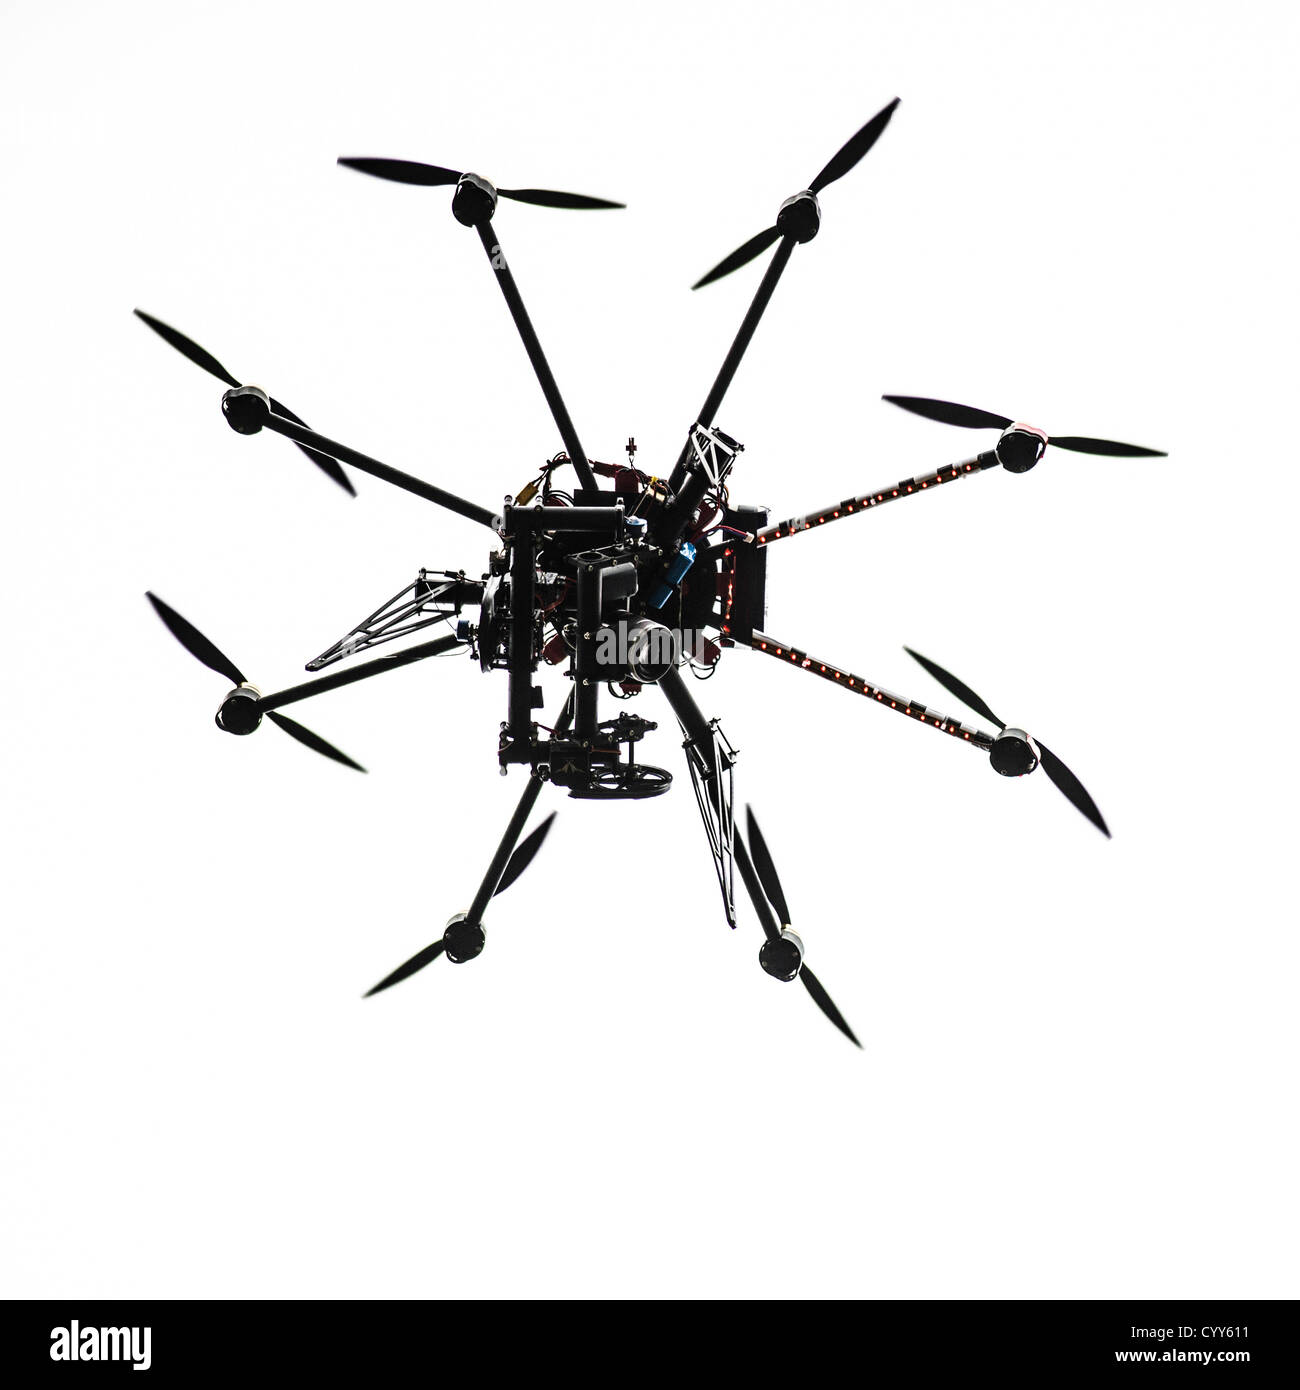 Un remoto Octocopter fotografías digitales de la cámara fotográfica plataforma teledirigido helicóptero fotografiar Foto de stock